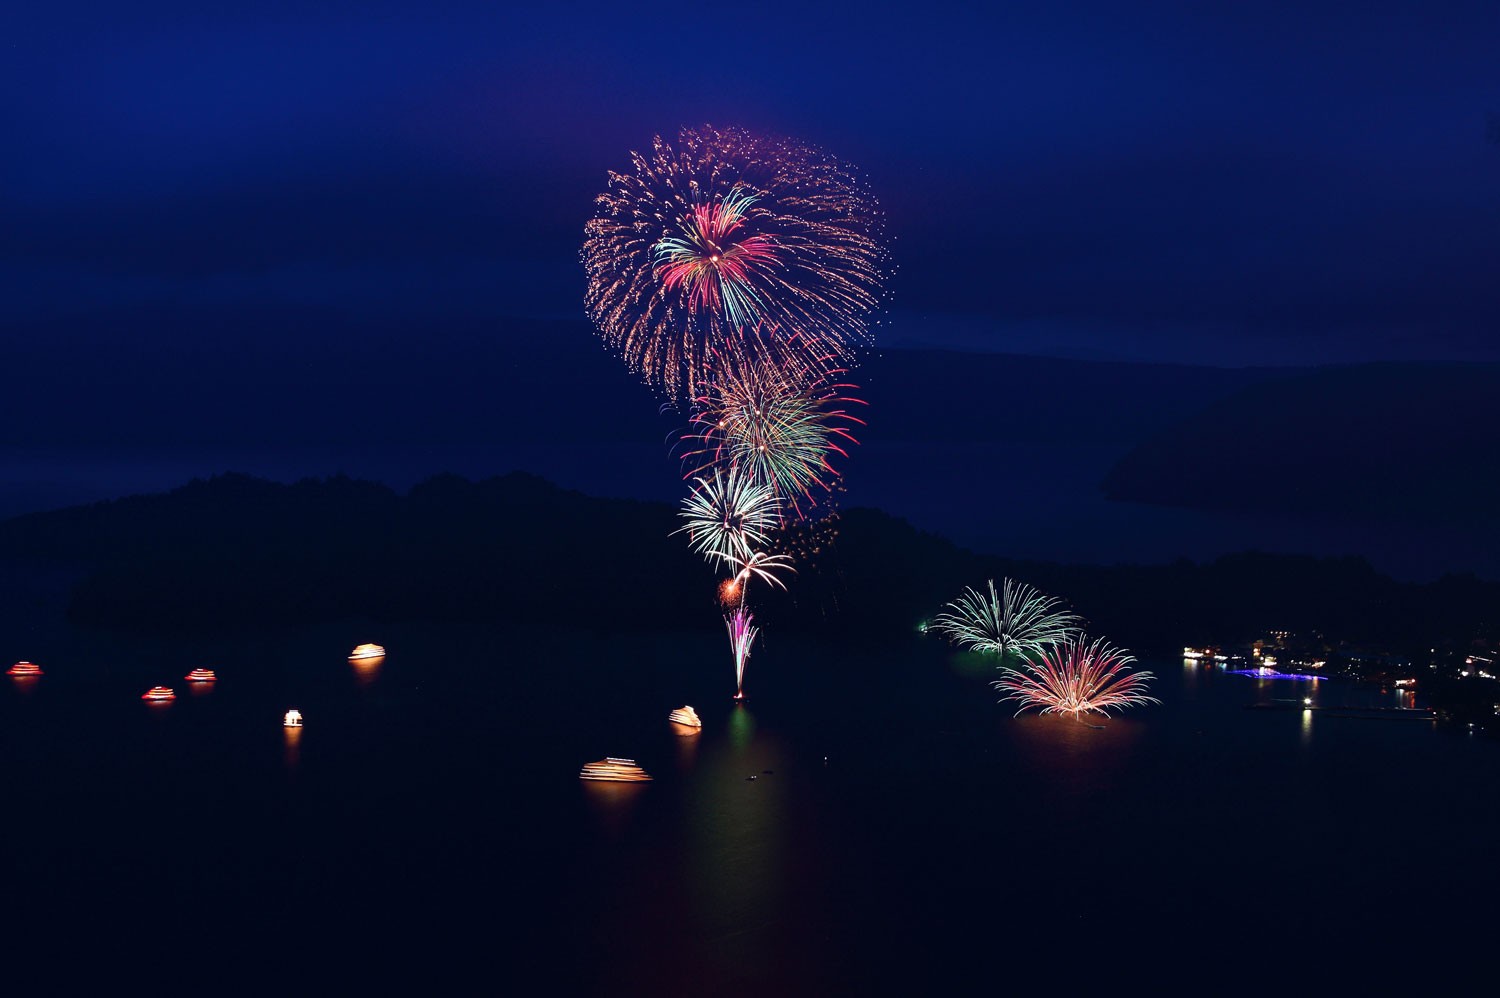 湖面に映る00発の花火 十和田湖湖水まつりを遊覧船で楽しもう Taptrip